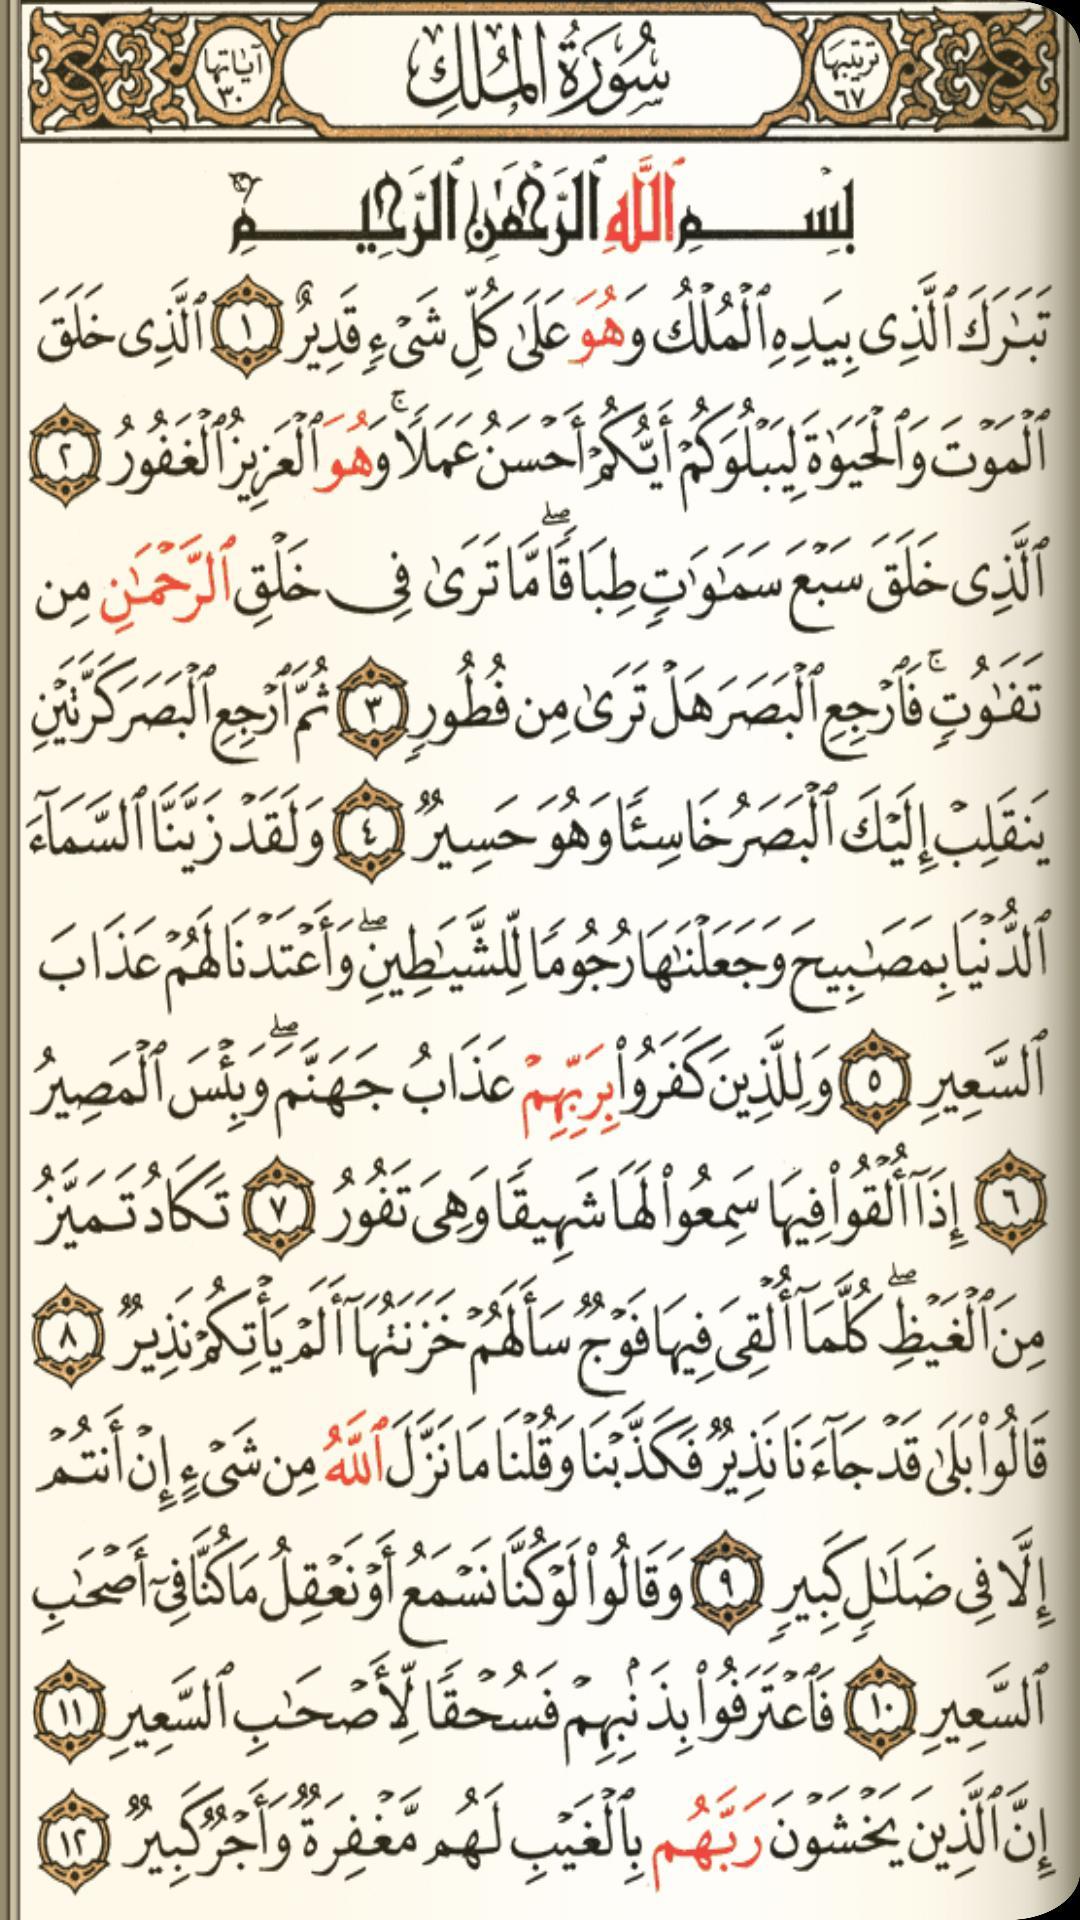 القرآن الكريم مع التفسير وميزات أخرى 6.1 Screenshot 2